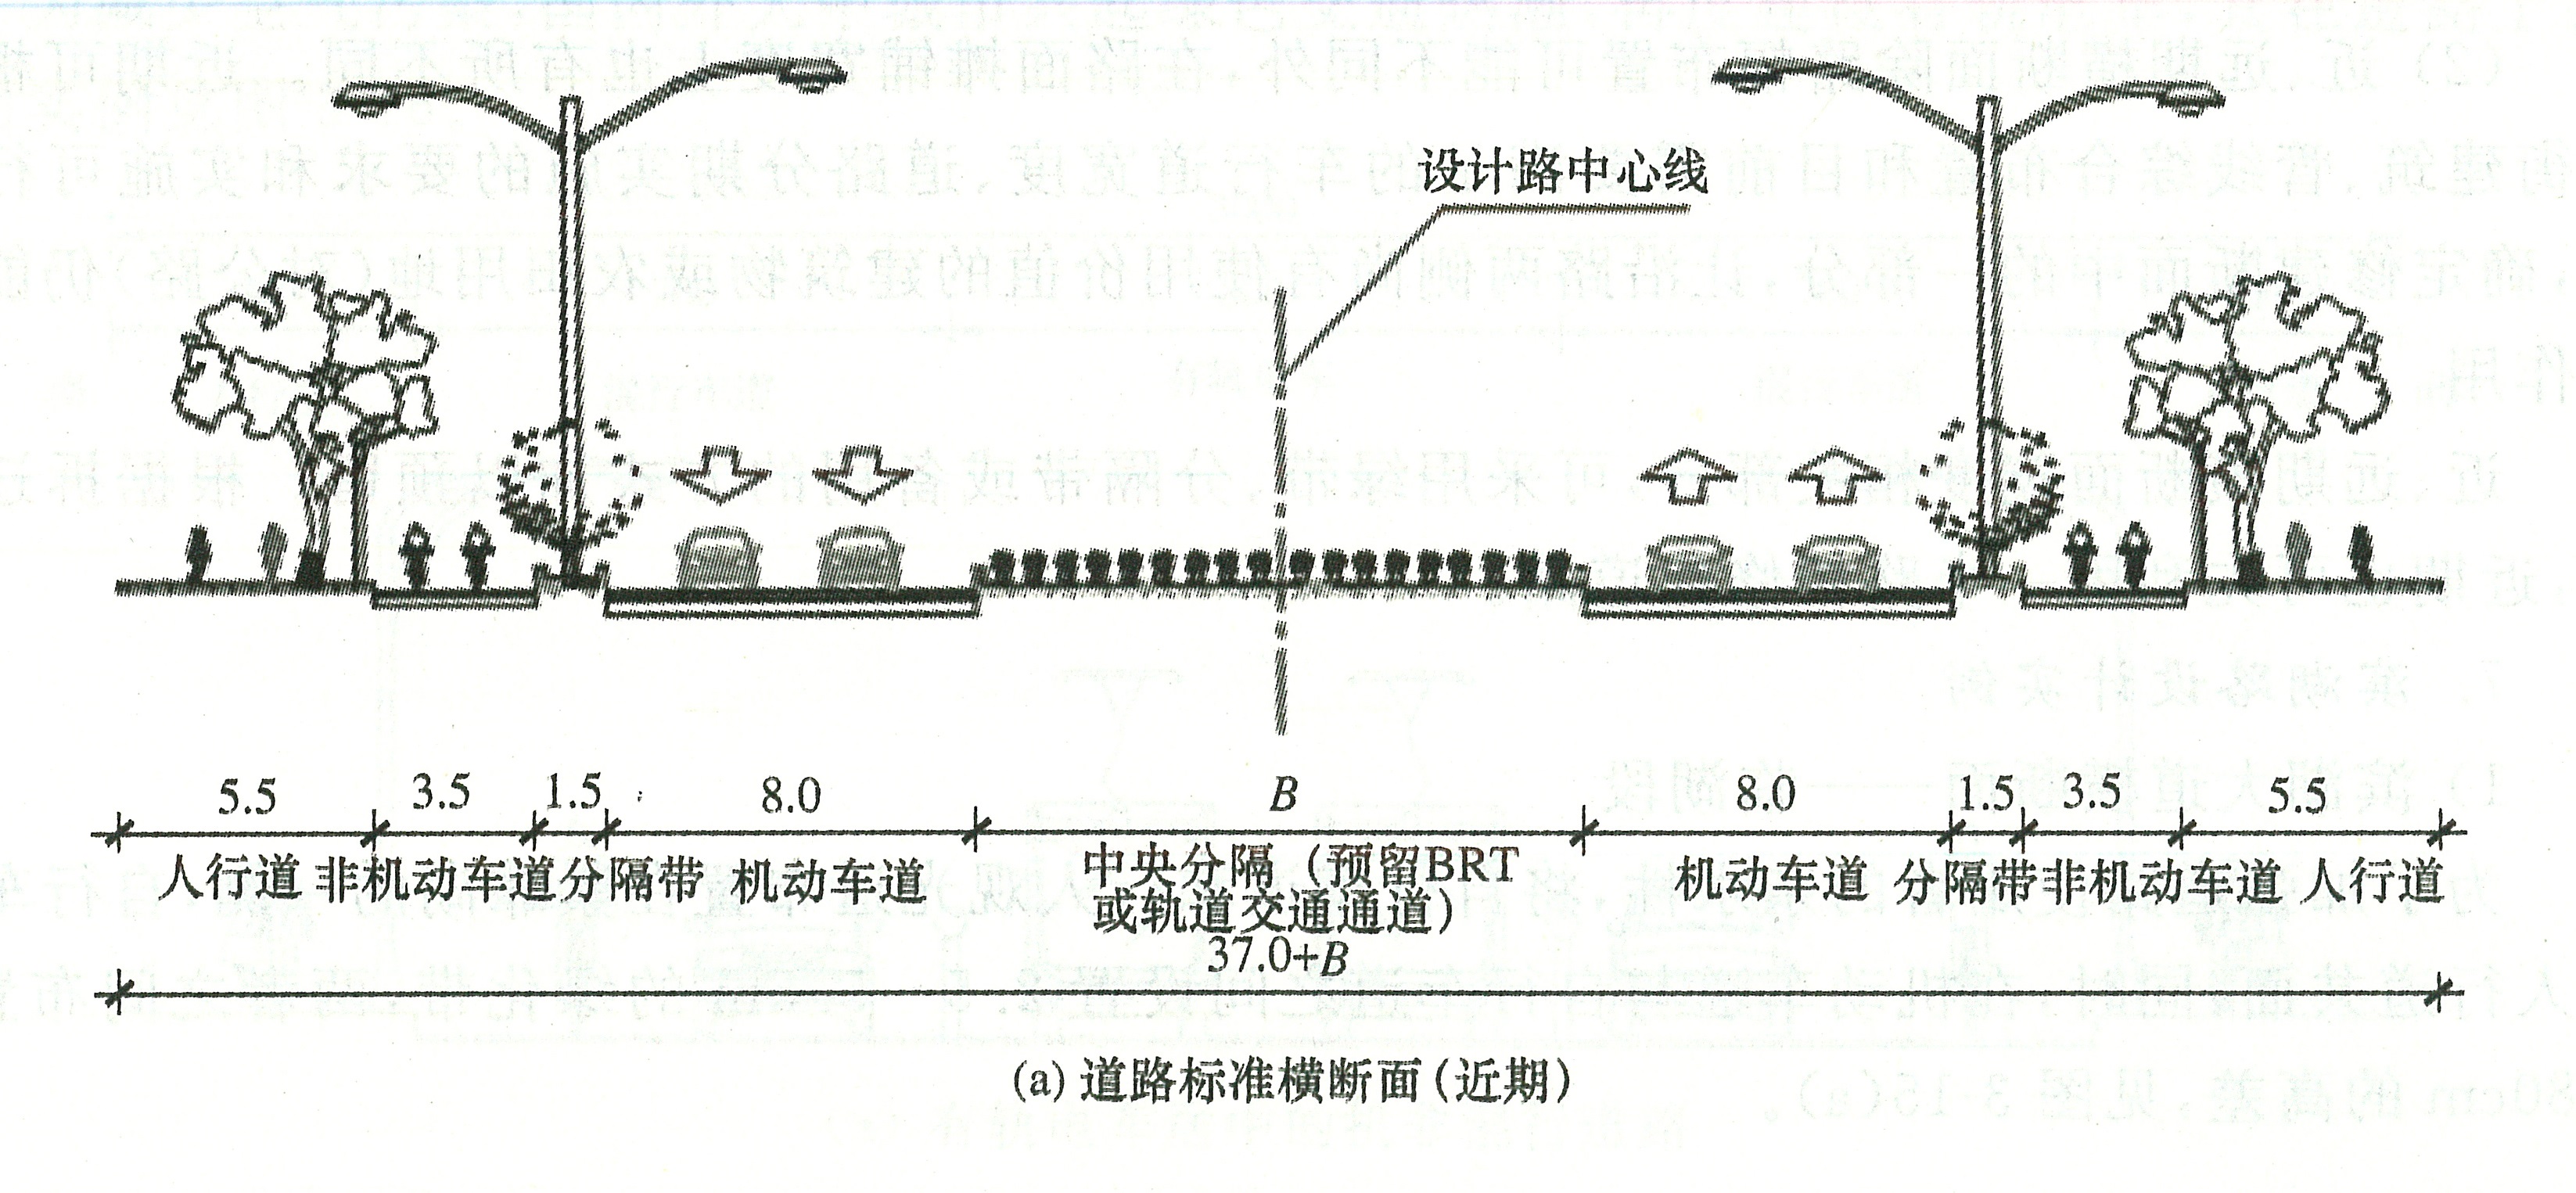 图3-14近远期结构的道路横断面布置1.jpg